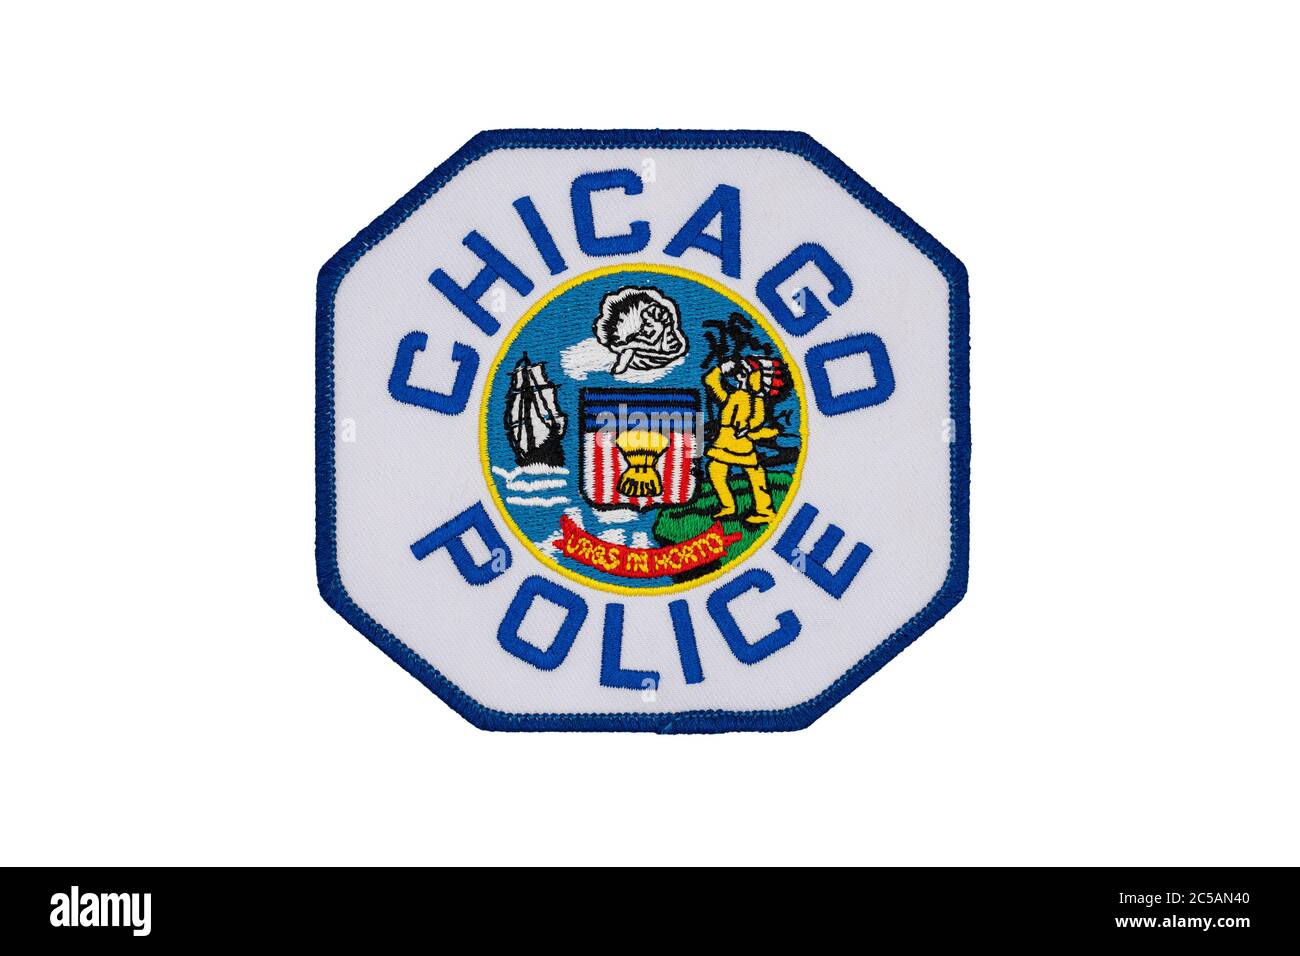 La spalla ufficiale del Dipartimento di polizia di Chicago isolato su sfondo bianco. Il motto latino "Urbs in horto" (Città in un giardino), cucito su di esso. Foto Stock